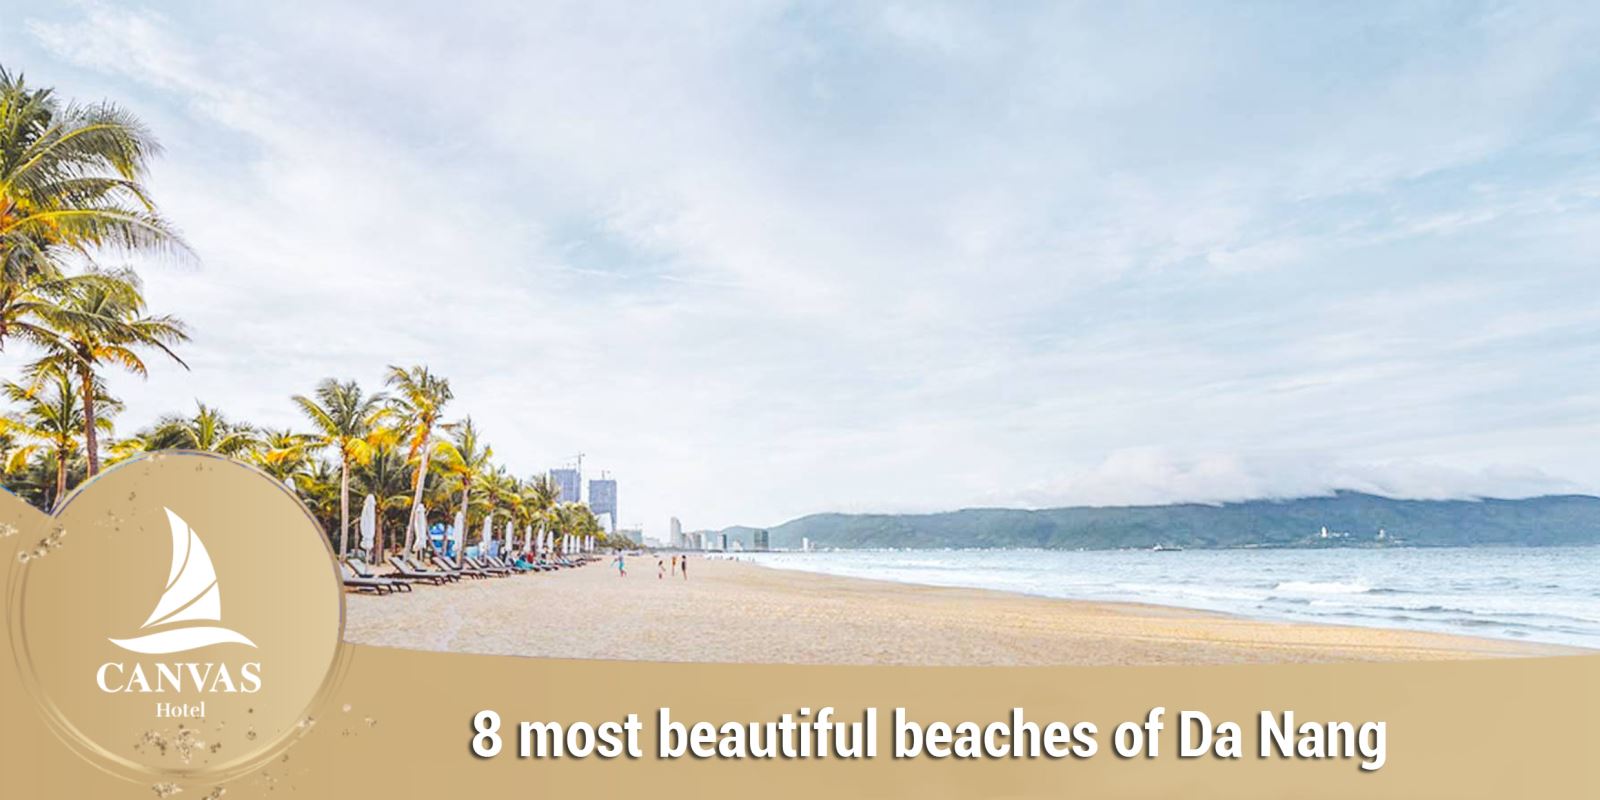 8 most beautiful beaches of Da Nang